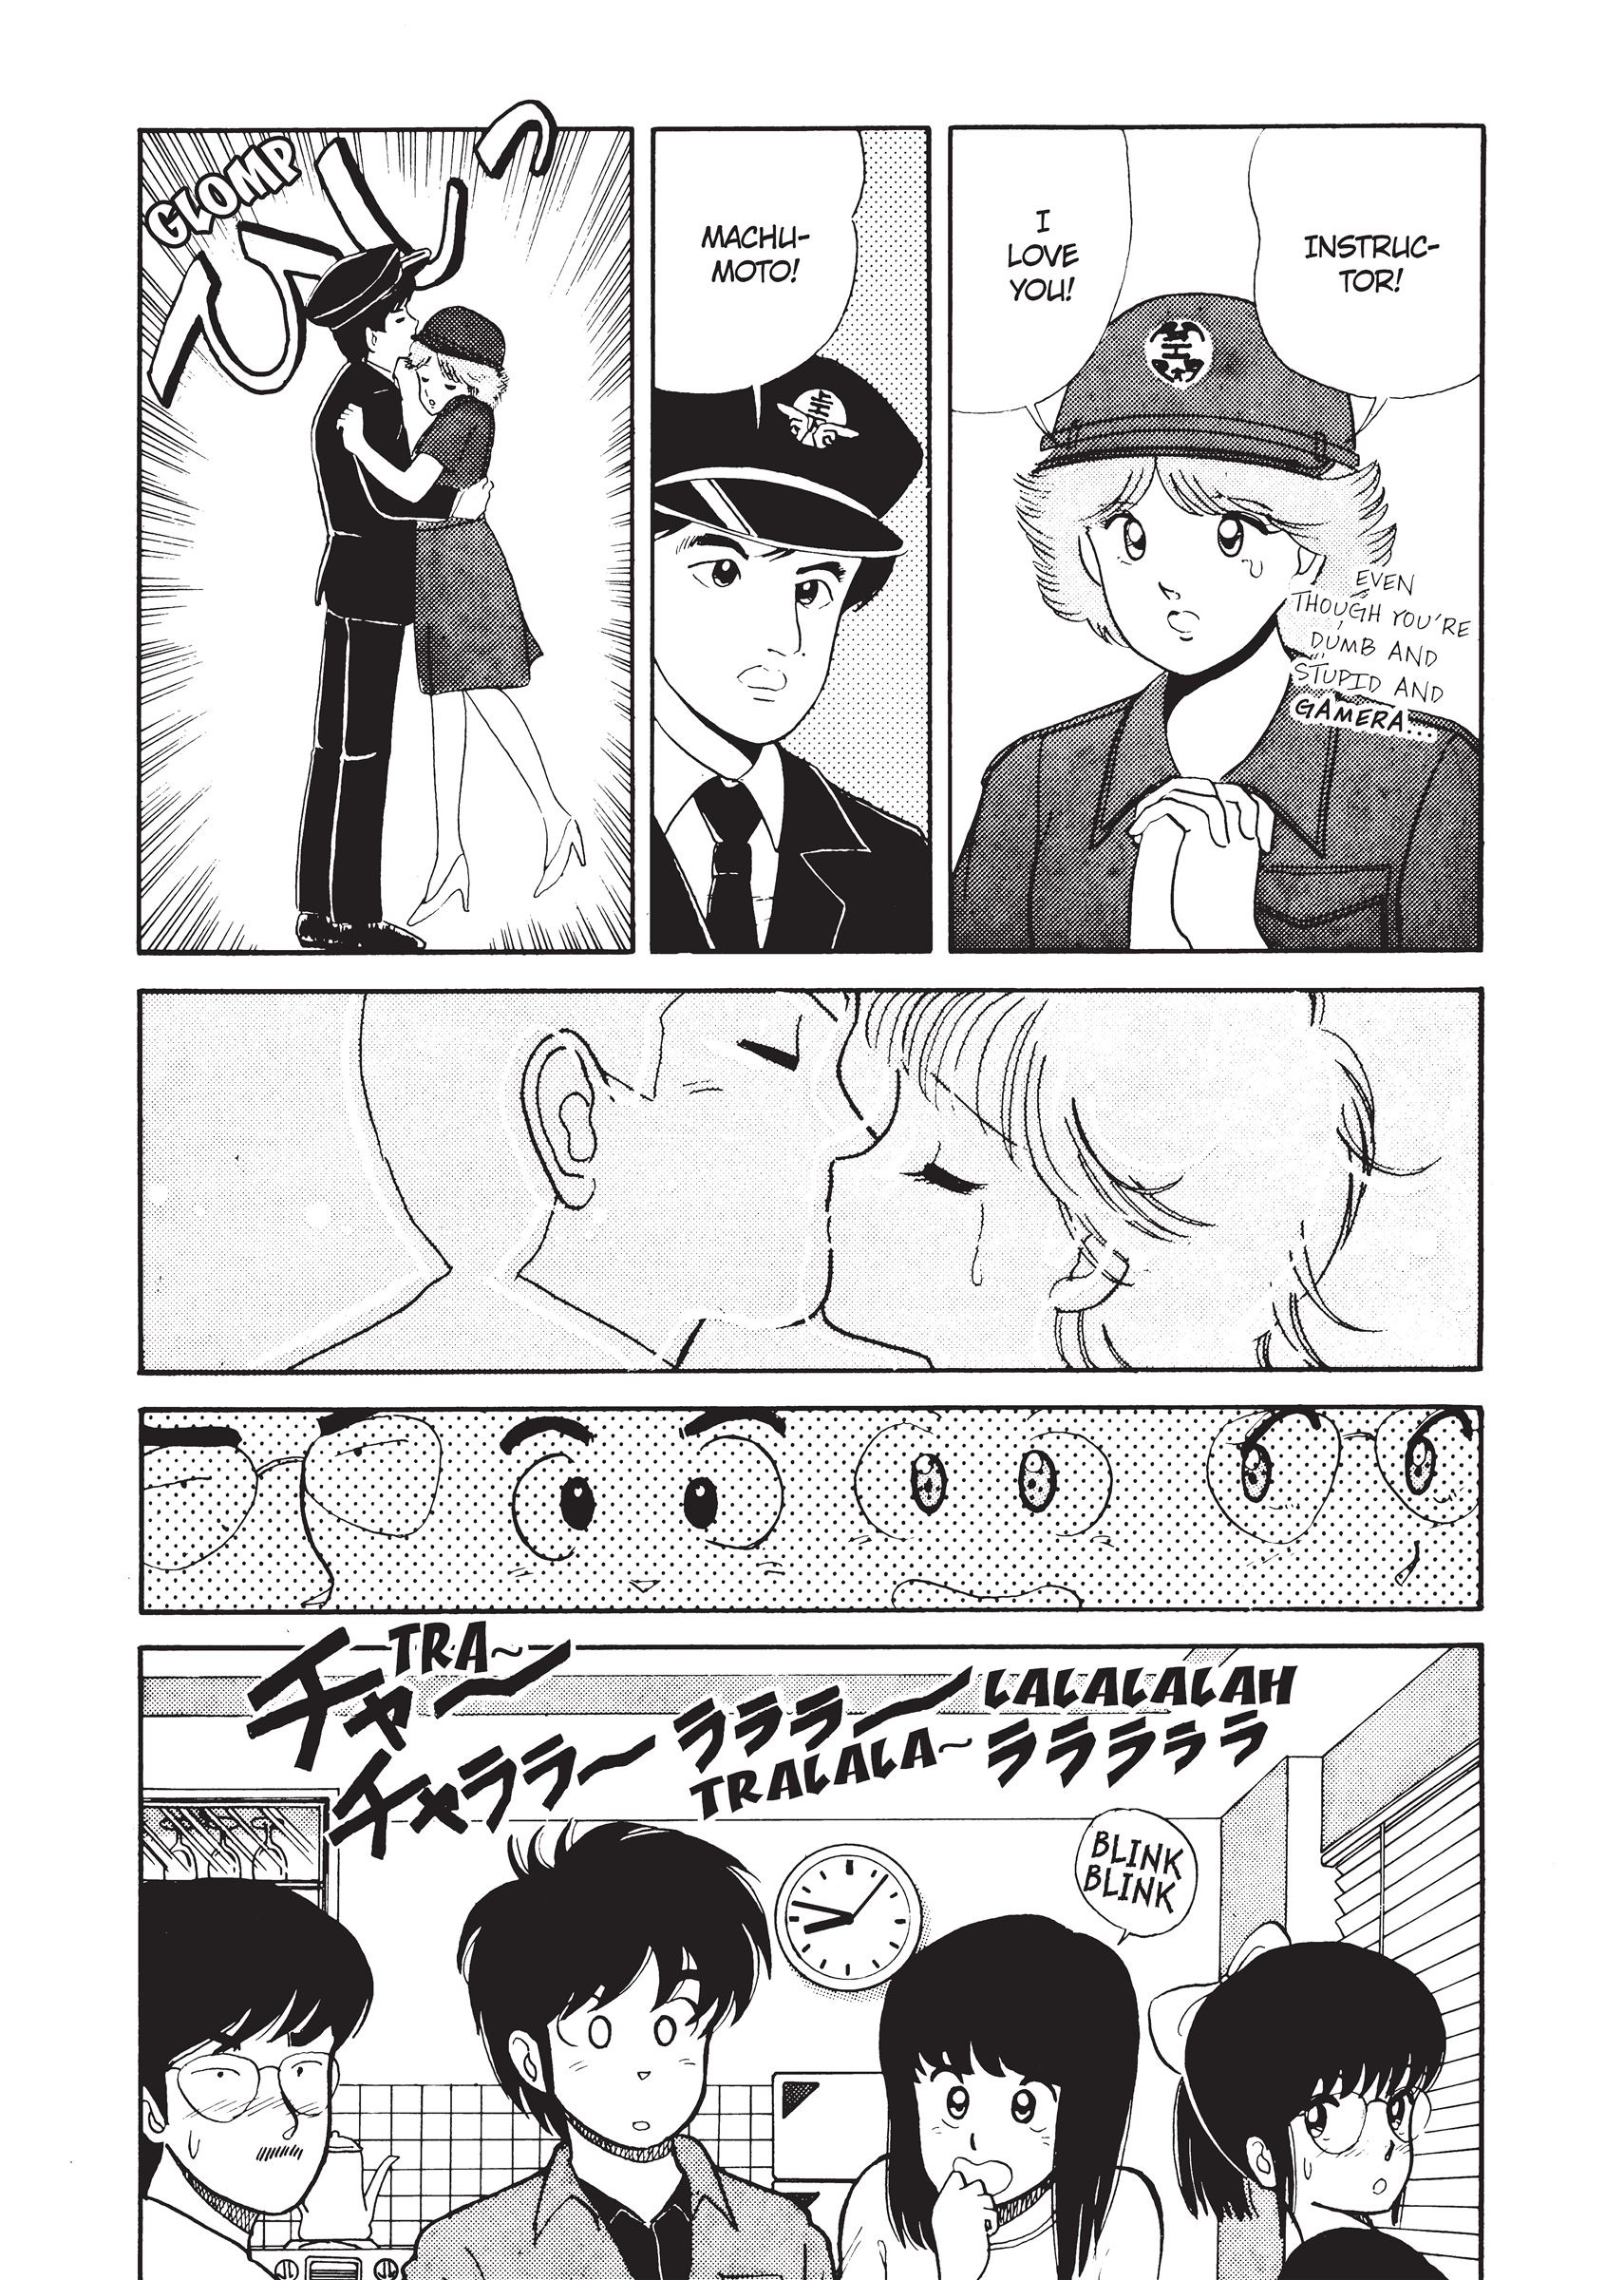 Kimagure Orange★Road Vol.1 Chapter 3: The Lip Secret! - Picture 2